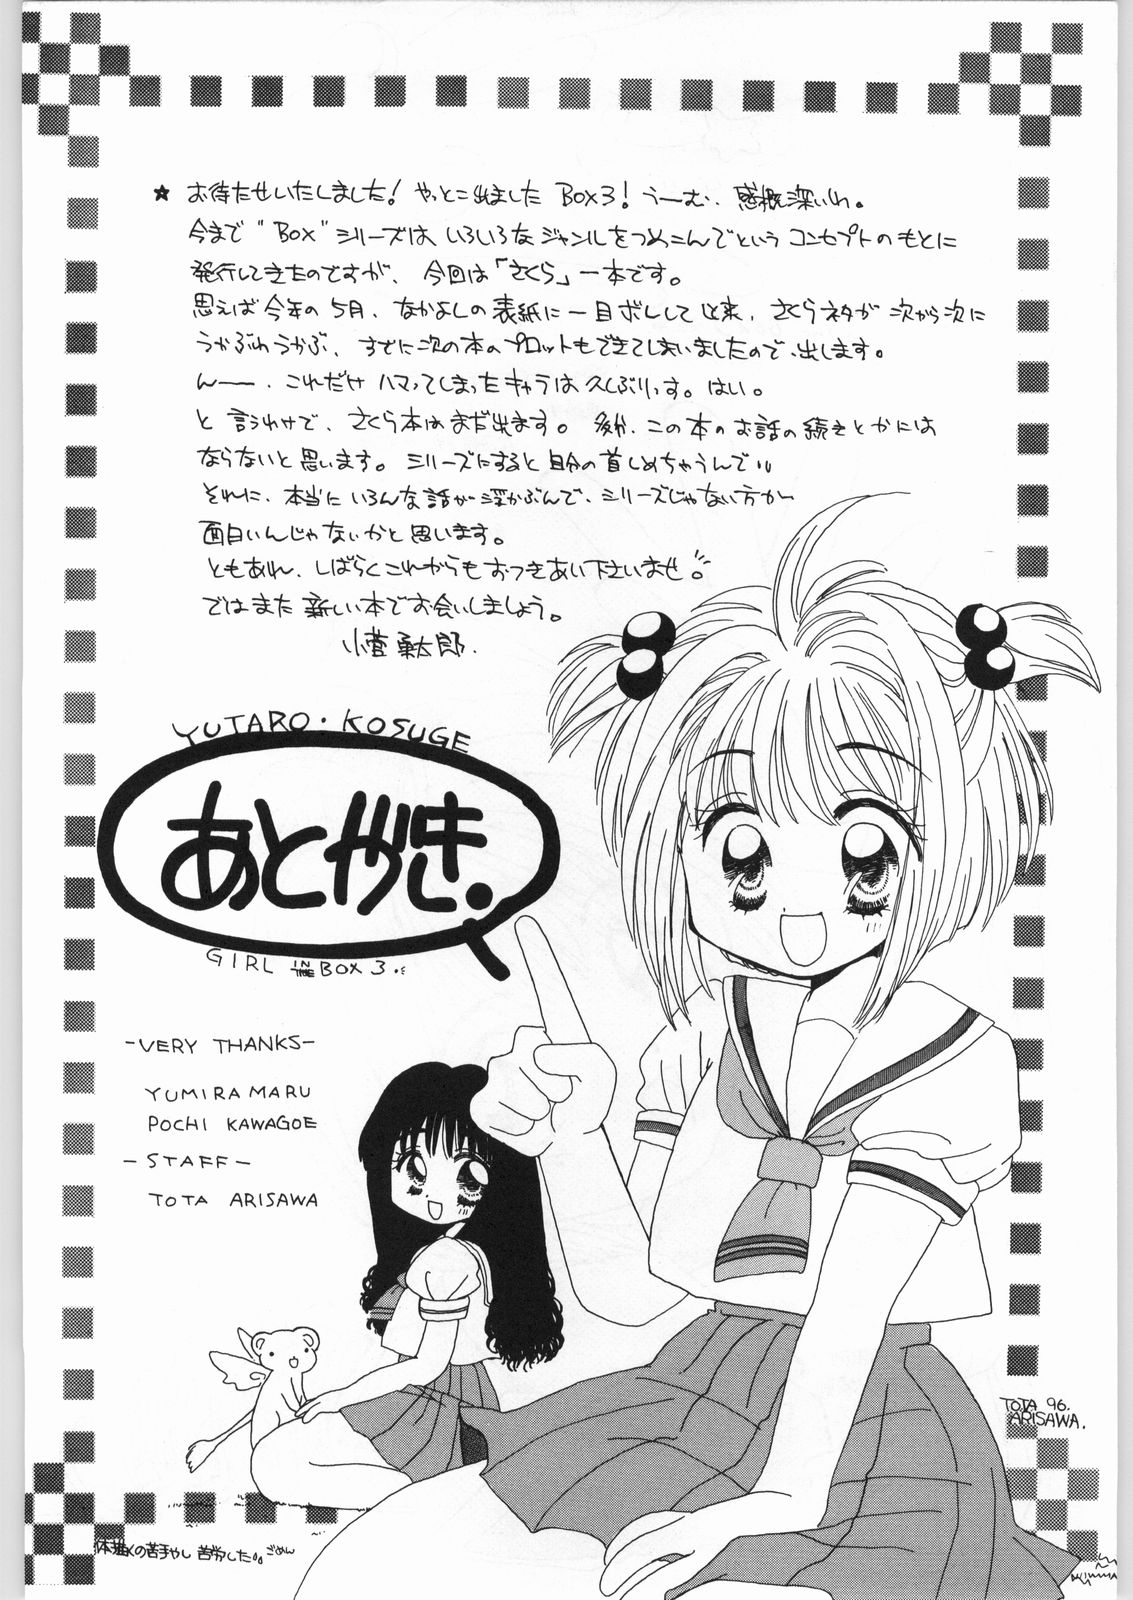 [カフェテリアWATERMELON (小菅勇太郎)] GIRL IN THE BOX 3 (カードキャプターさくら)